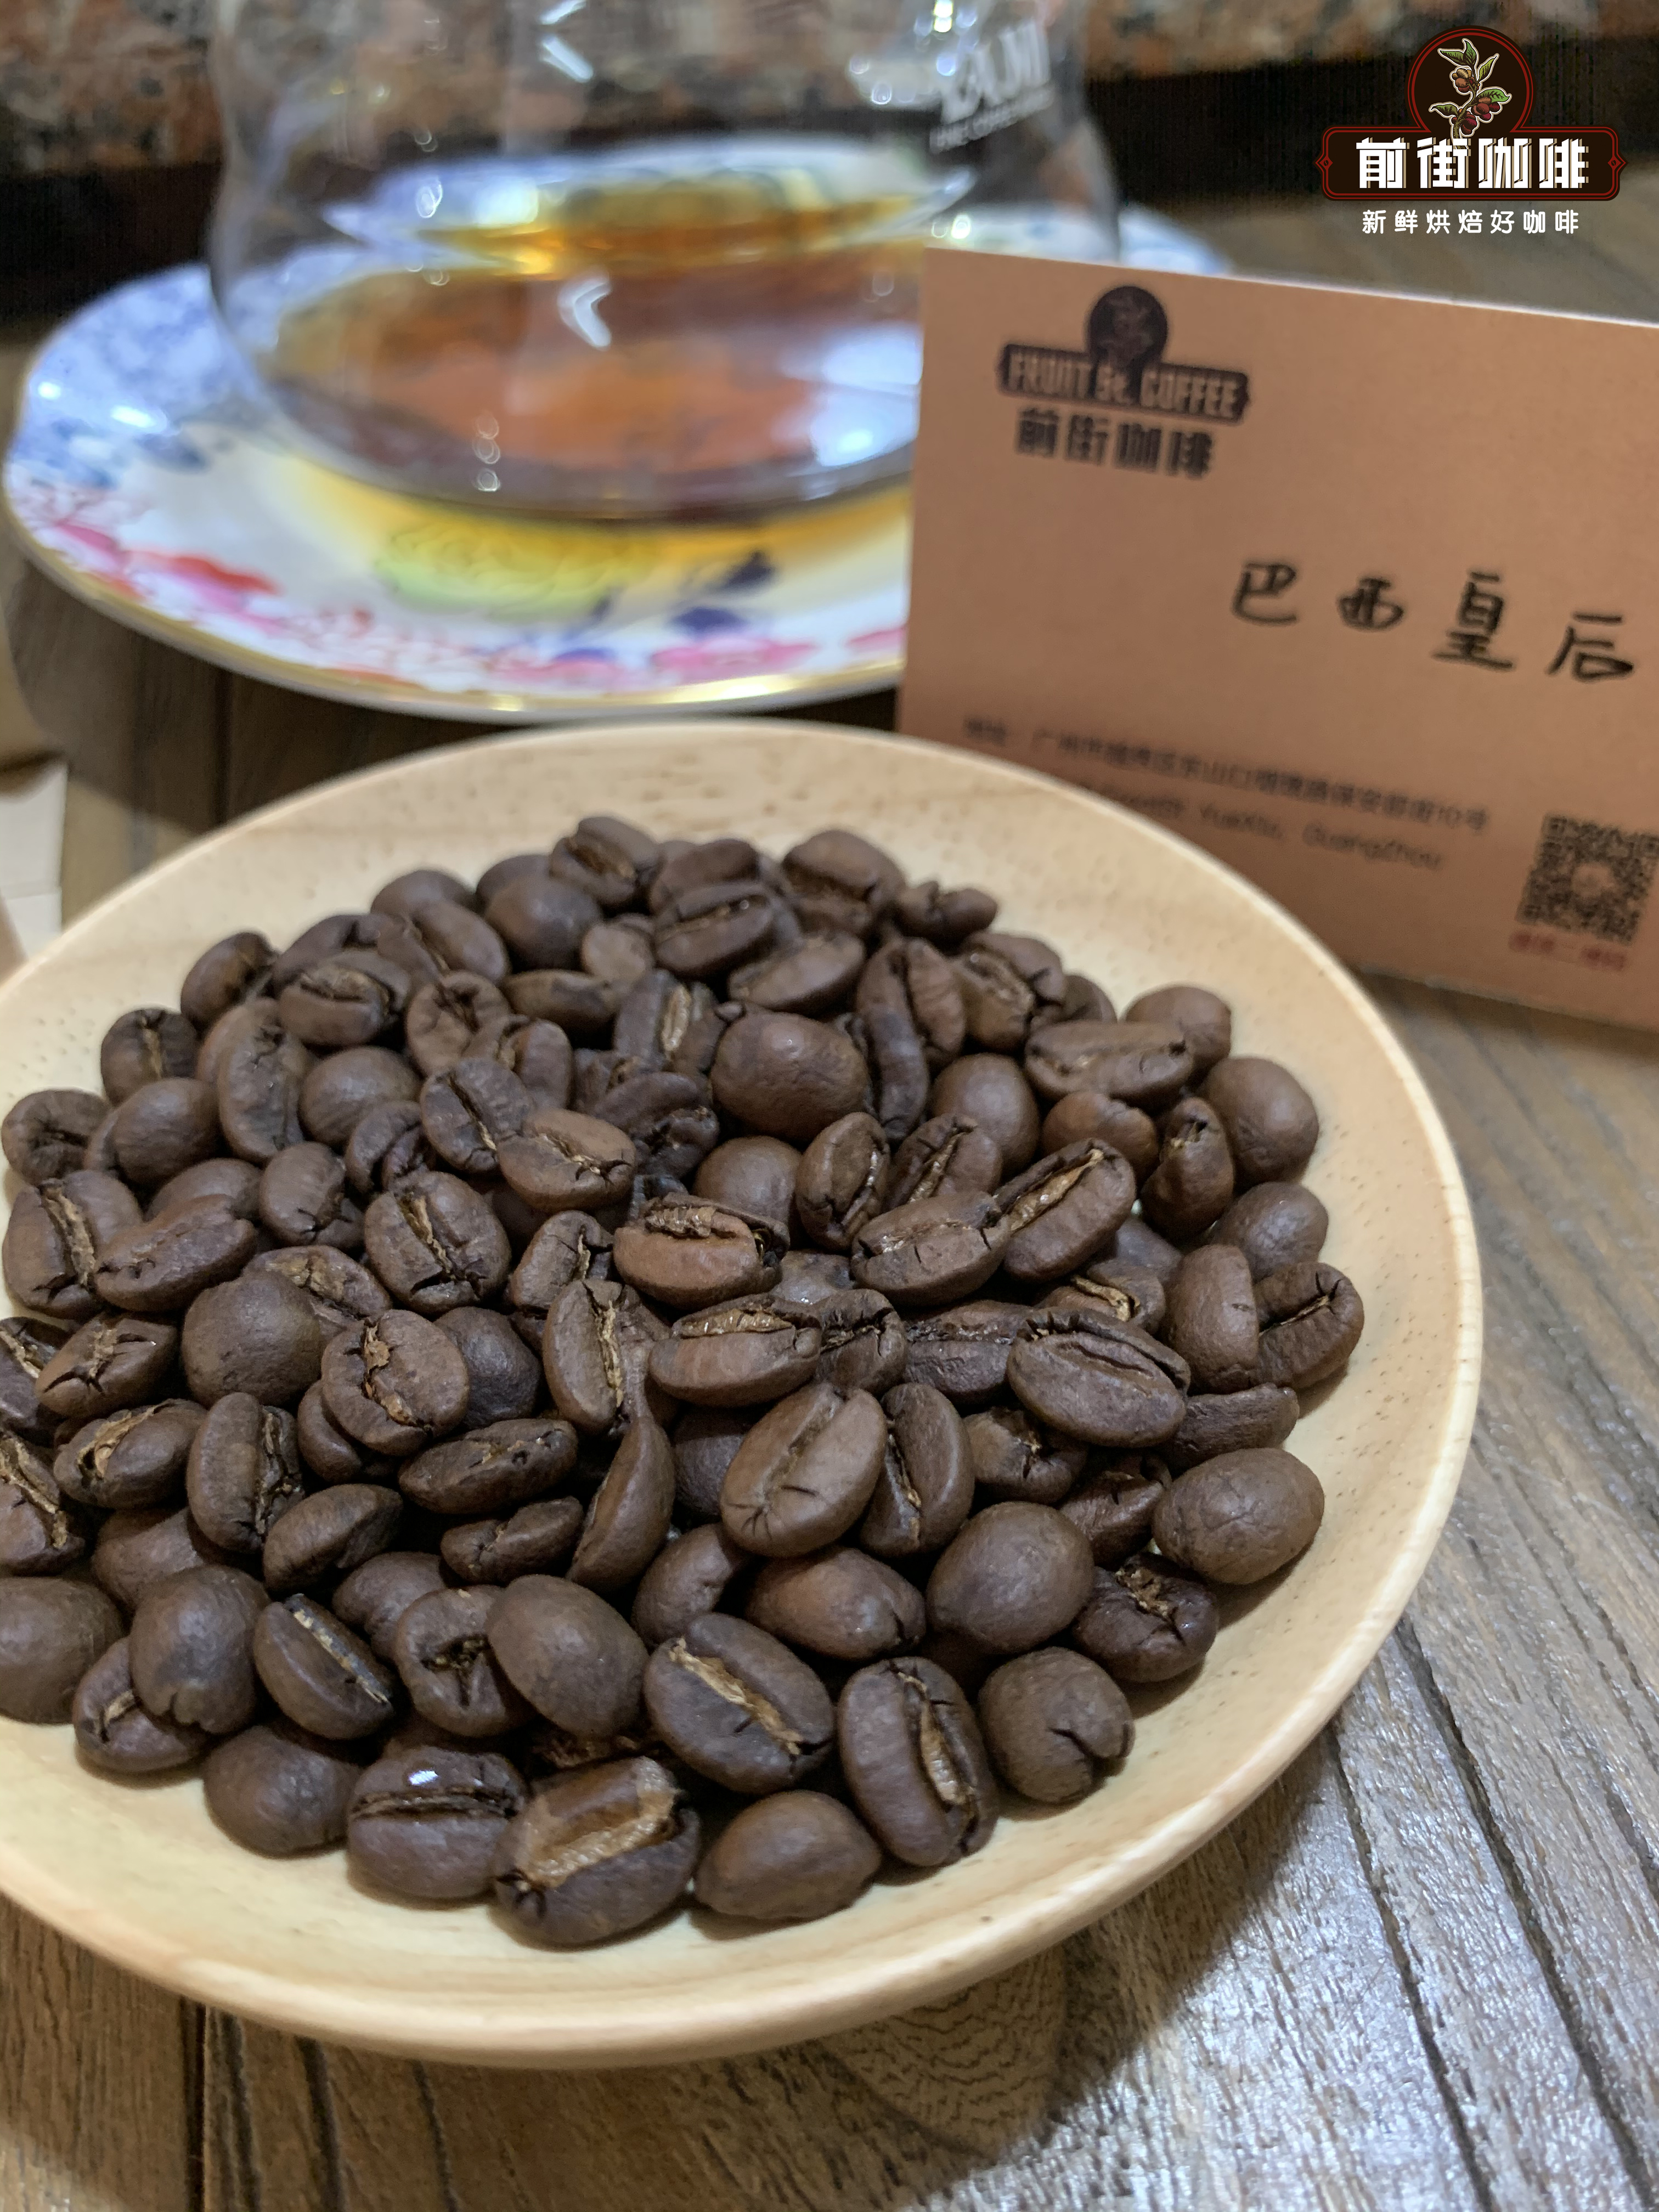 世界第一咖啡產國巴西產的咖啡爲什麼不是精品咖啡和特級咖啡？